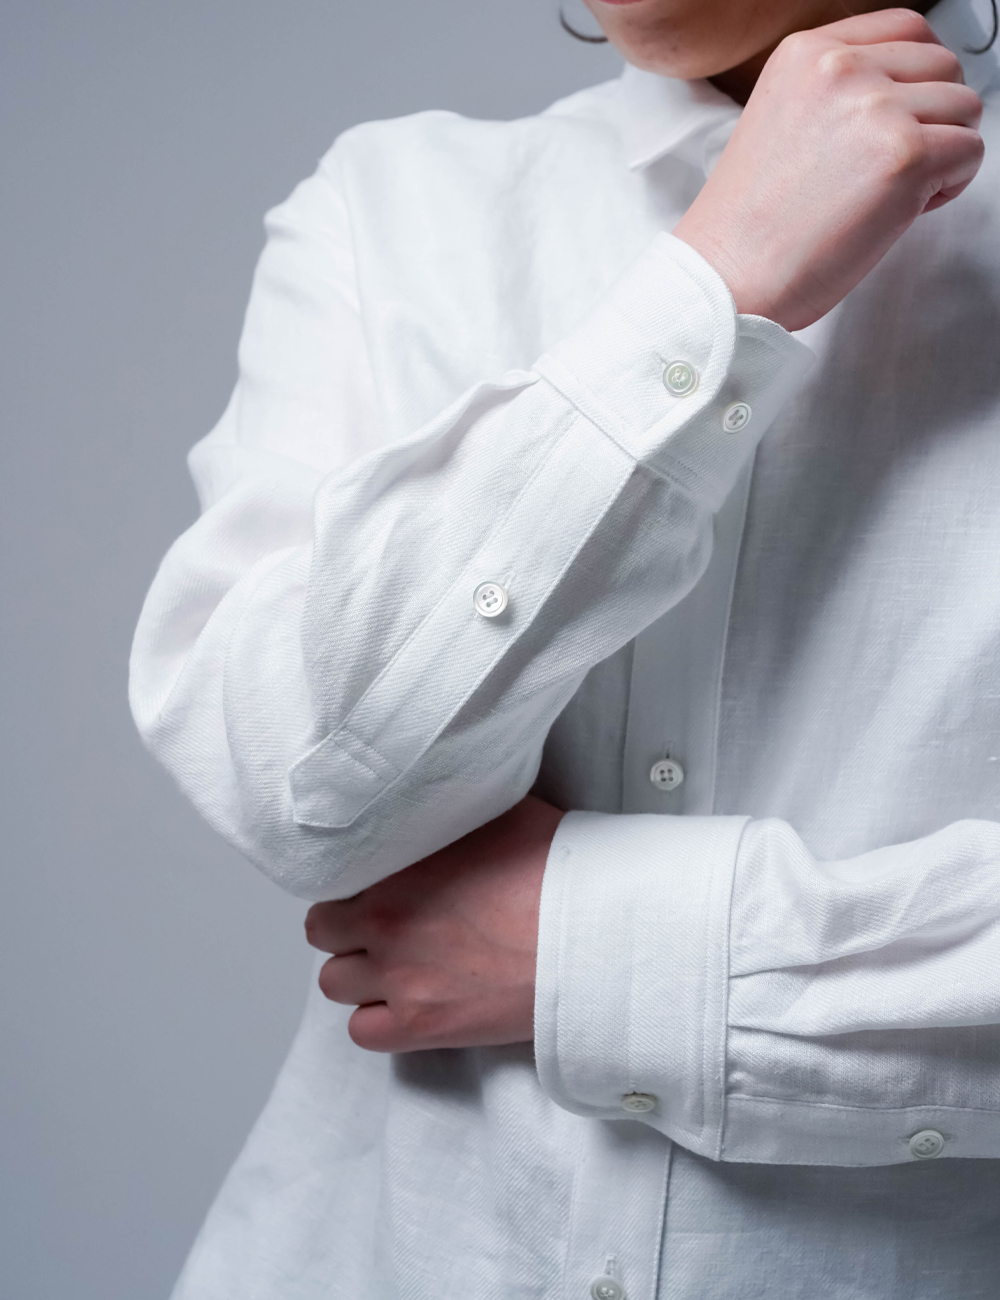 【プレミアム】 Linen Shirt wafu史上最高の上質リネン シャツ / ホワイト t031a-wht3